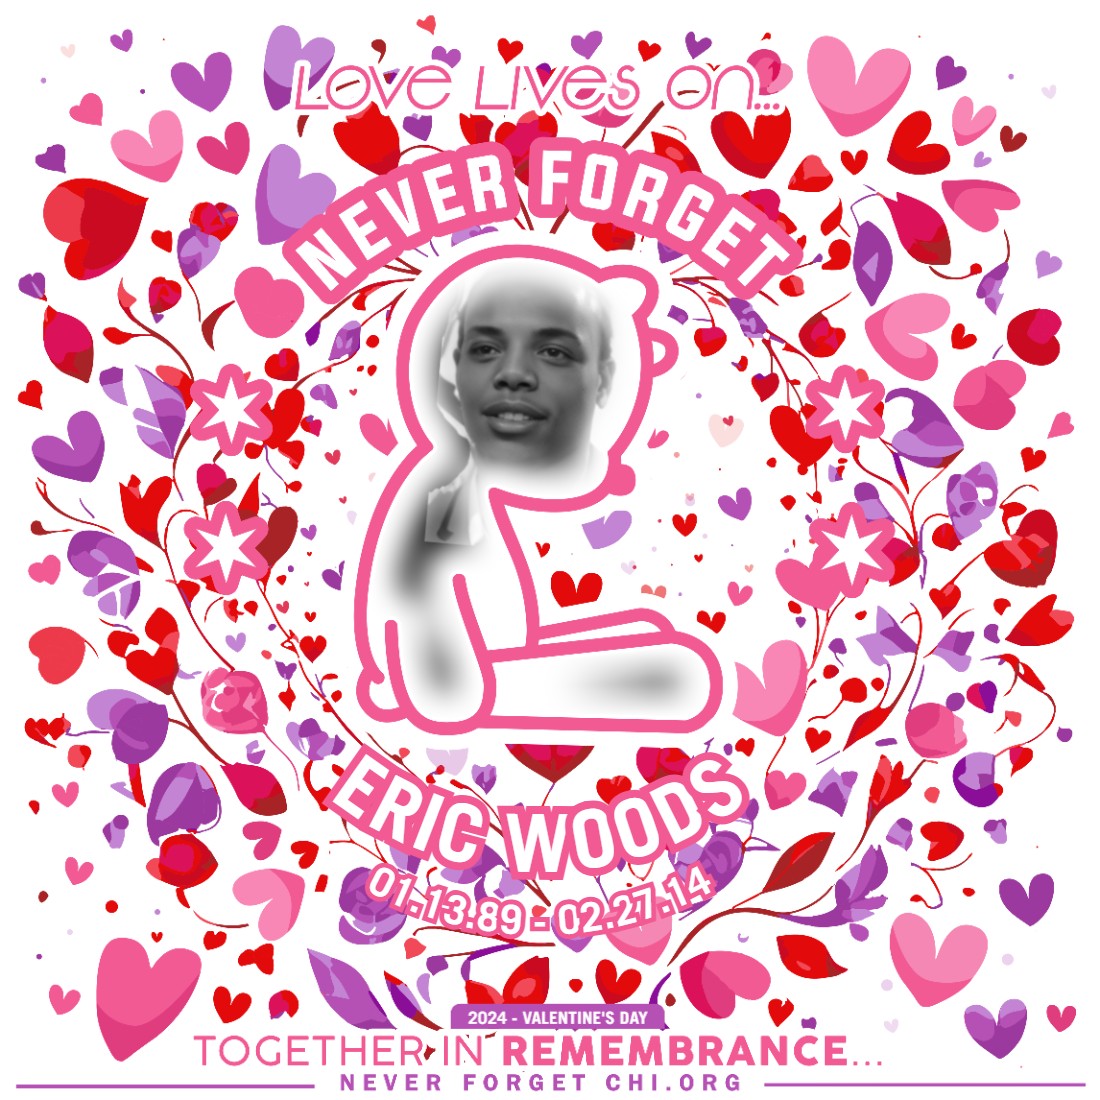 Eric Woods